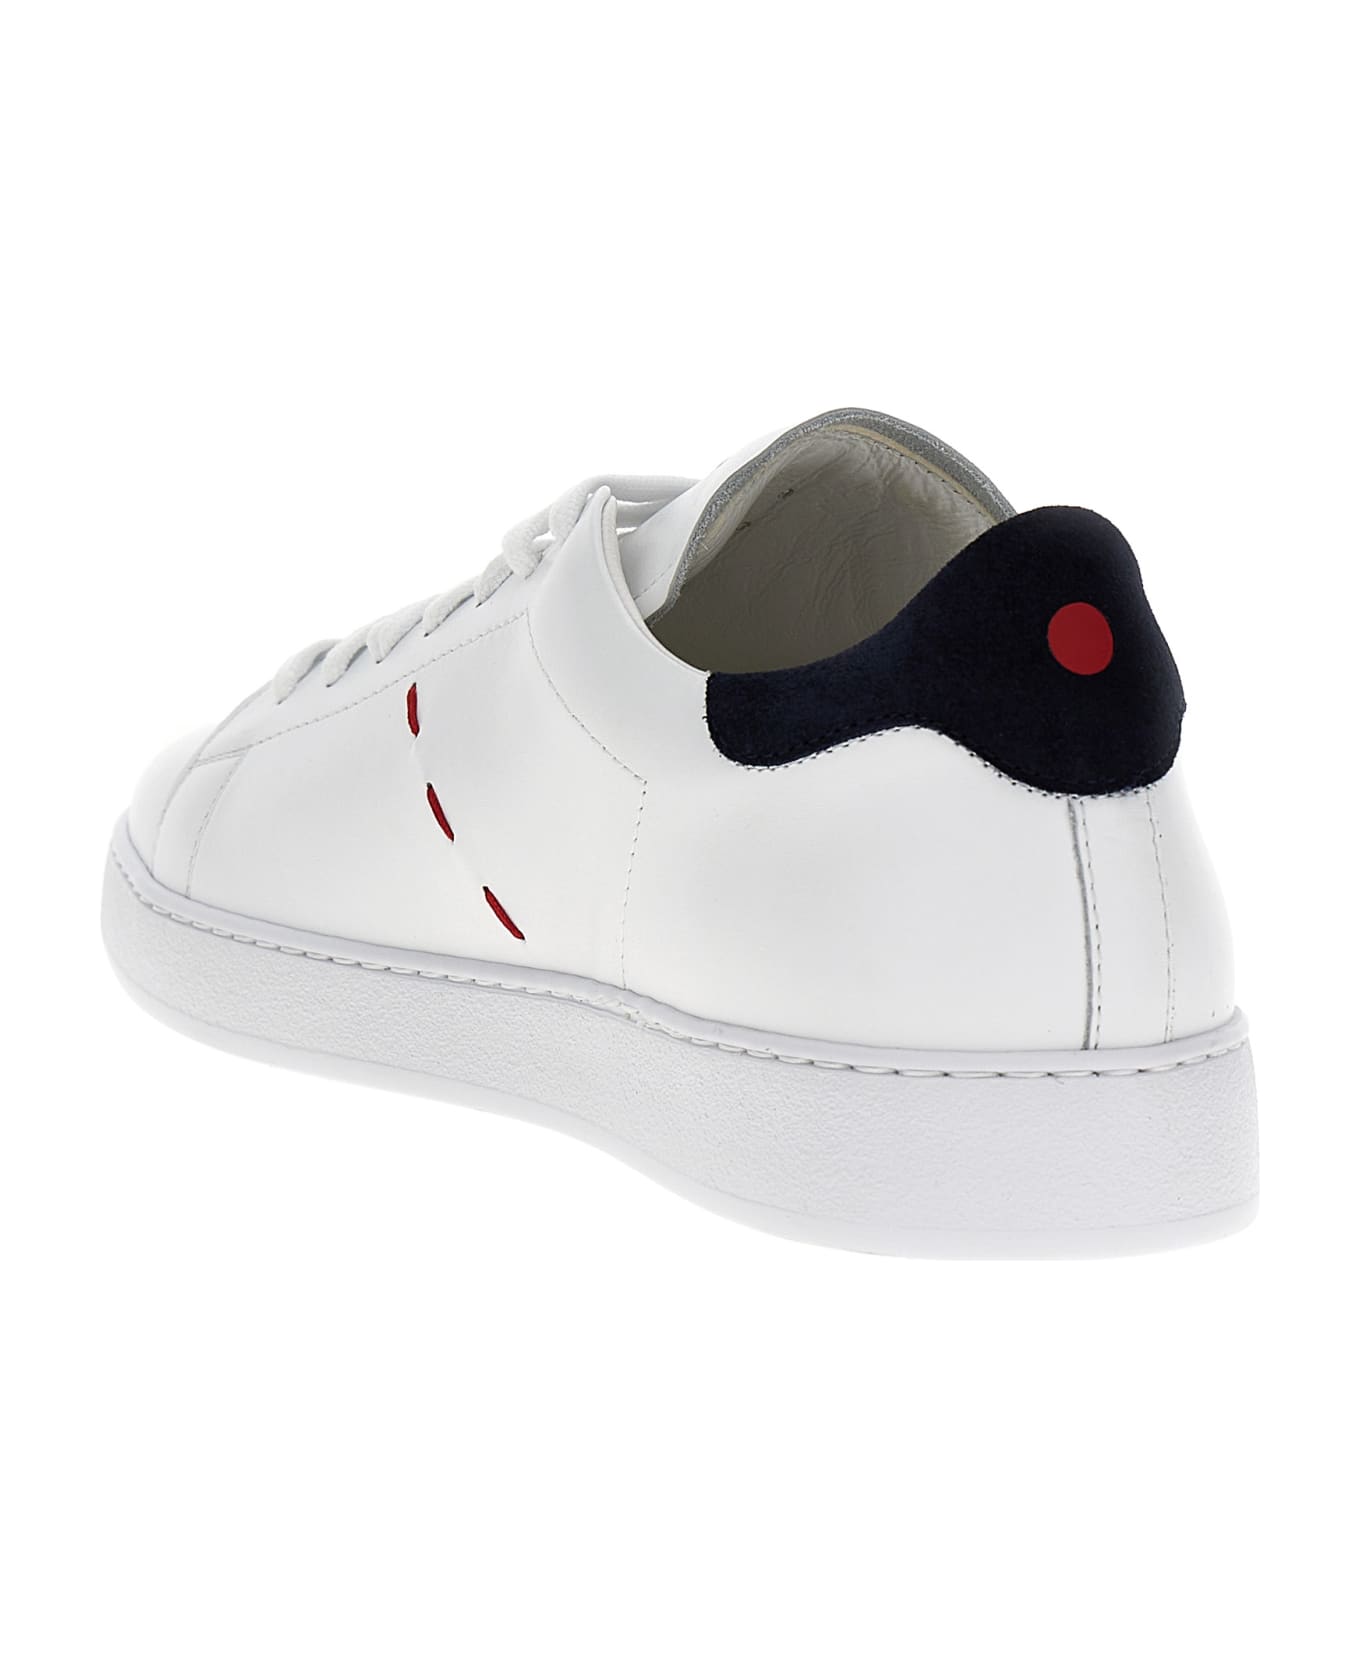 Kiton Low Sneakers - White